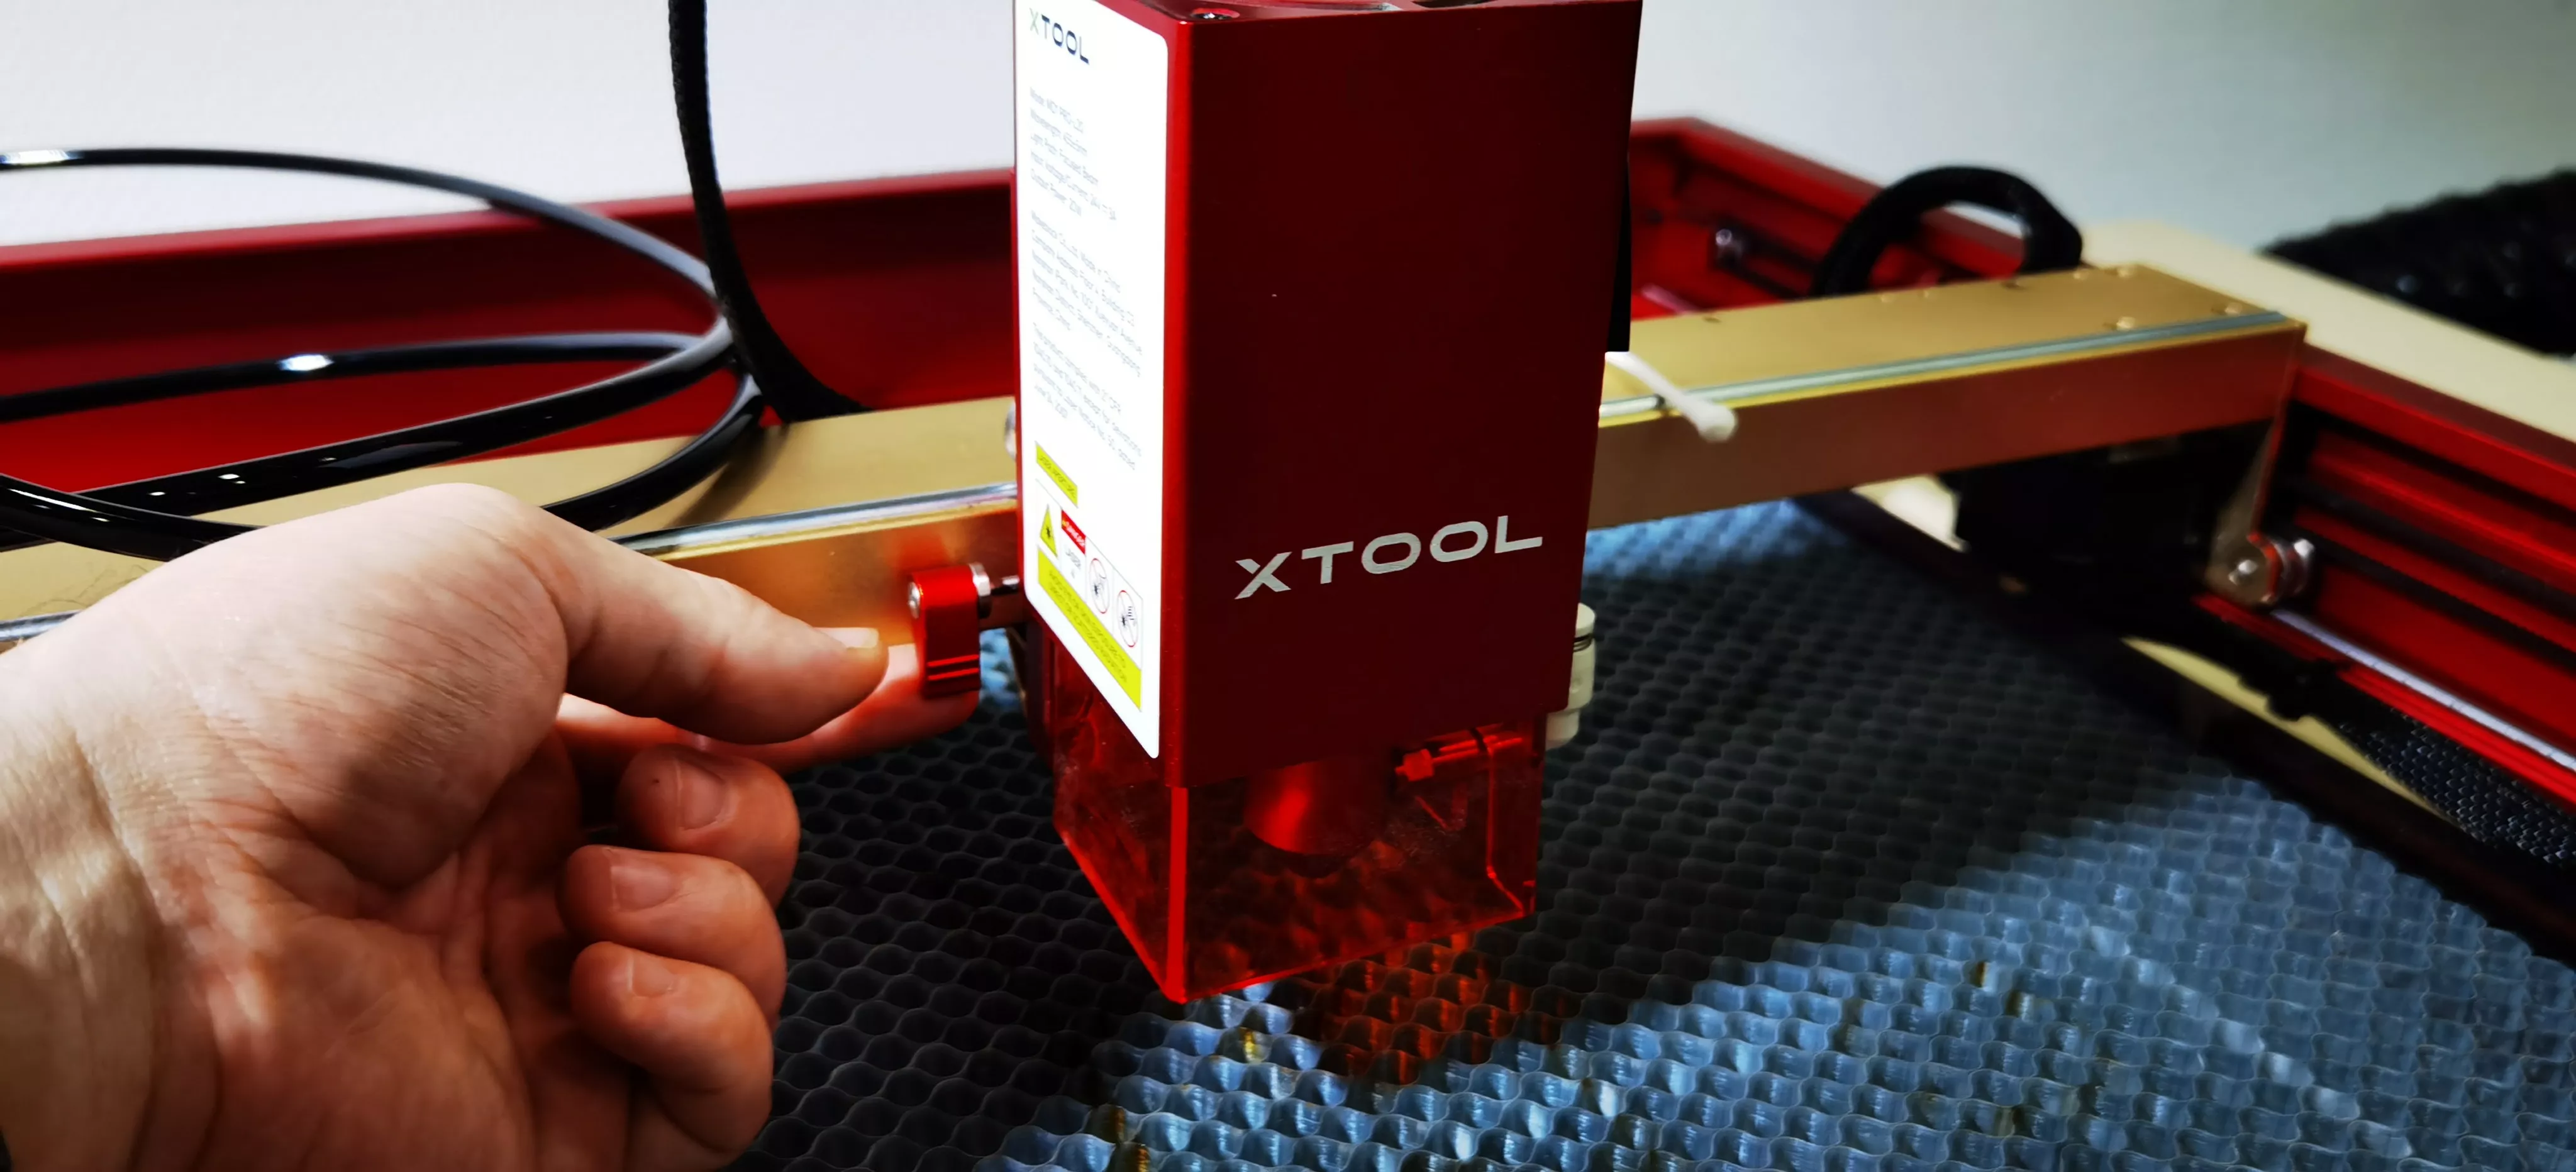 Test du xTool D1 Pro 20W : la gravure / découpe laser qui envoie